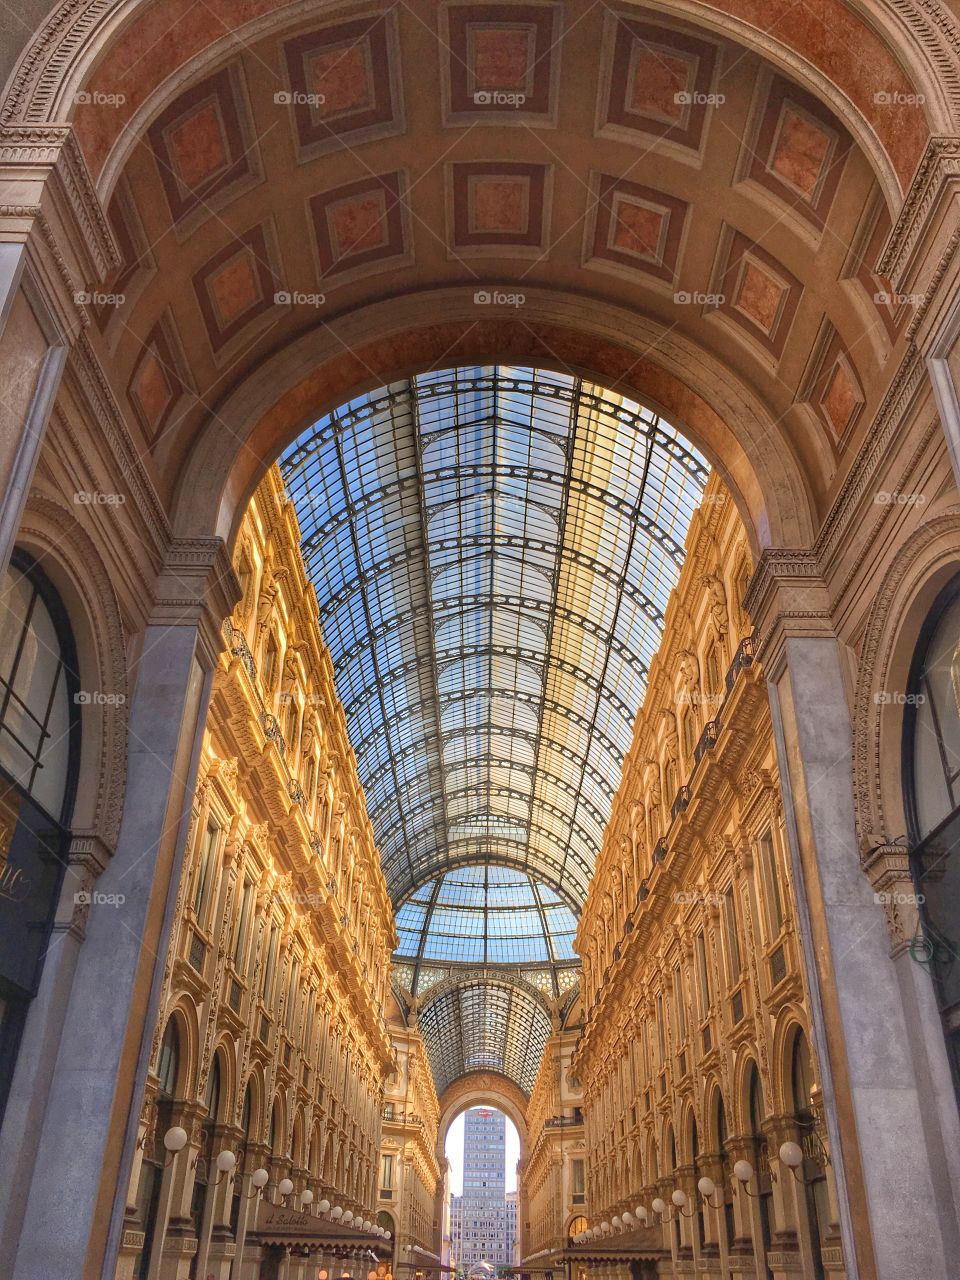 Galleria Vittorio Emanuelle